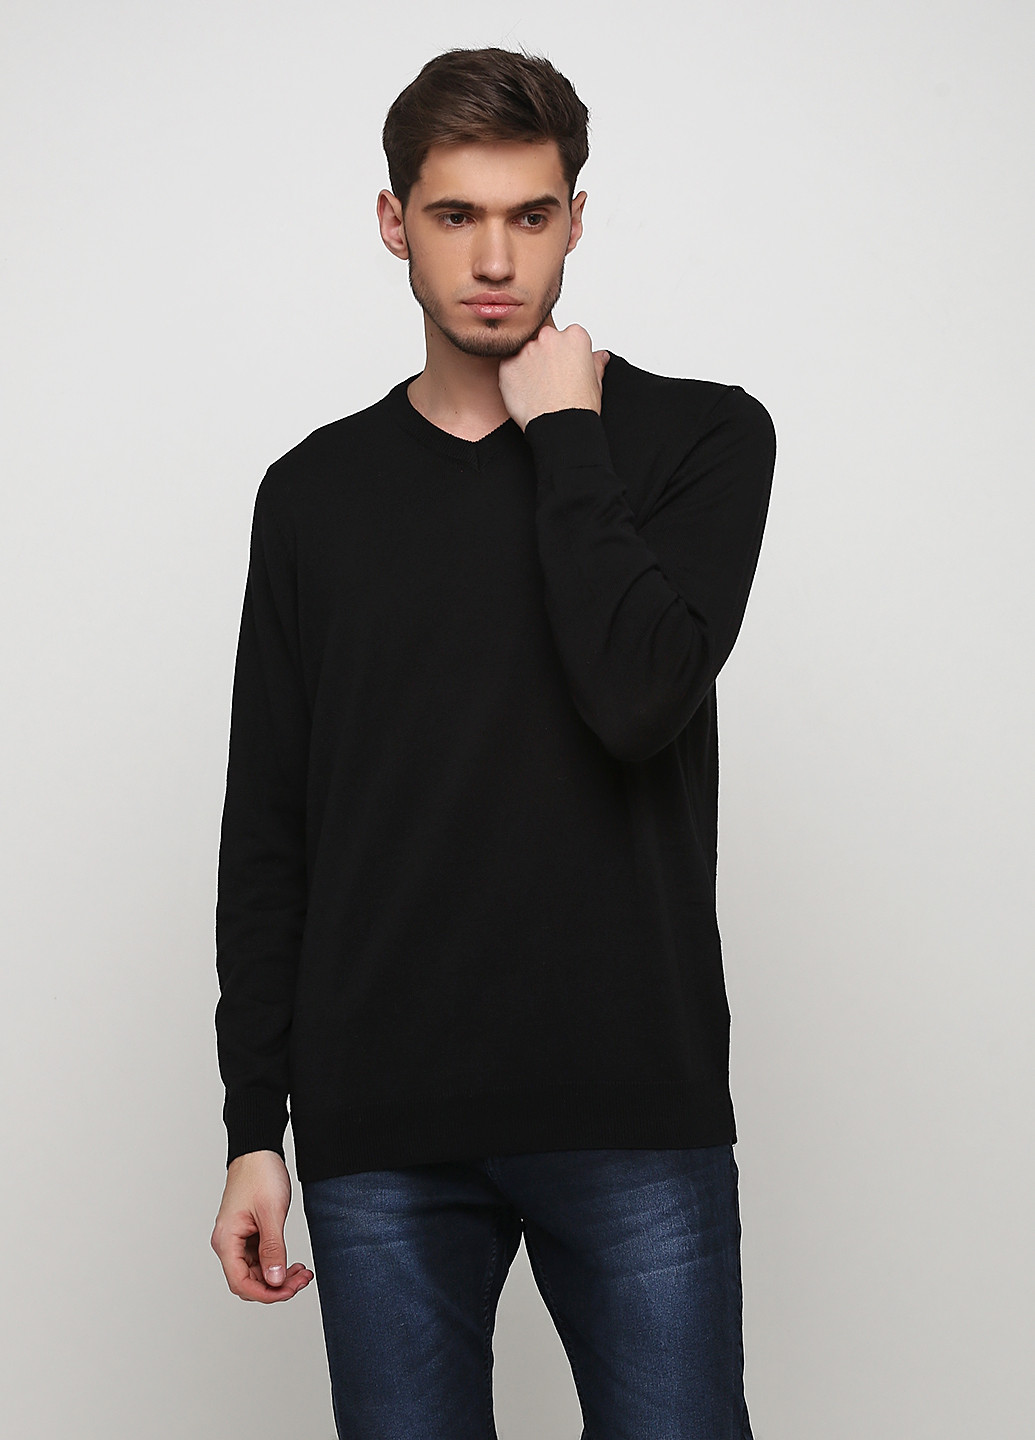 Черный демисезонный пуловер пуловер Livergy